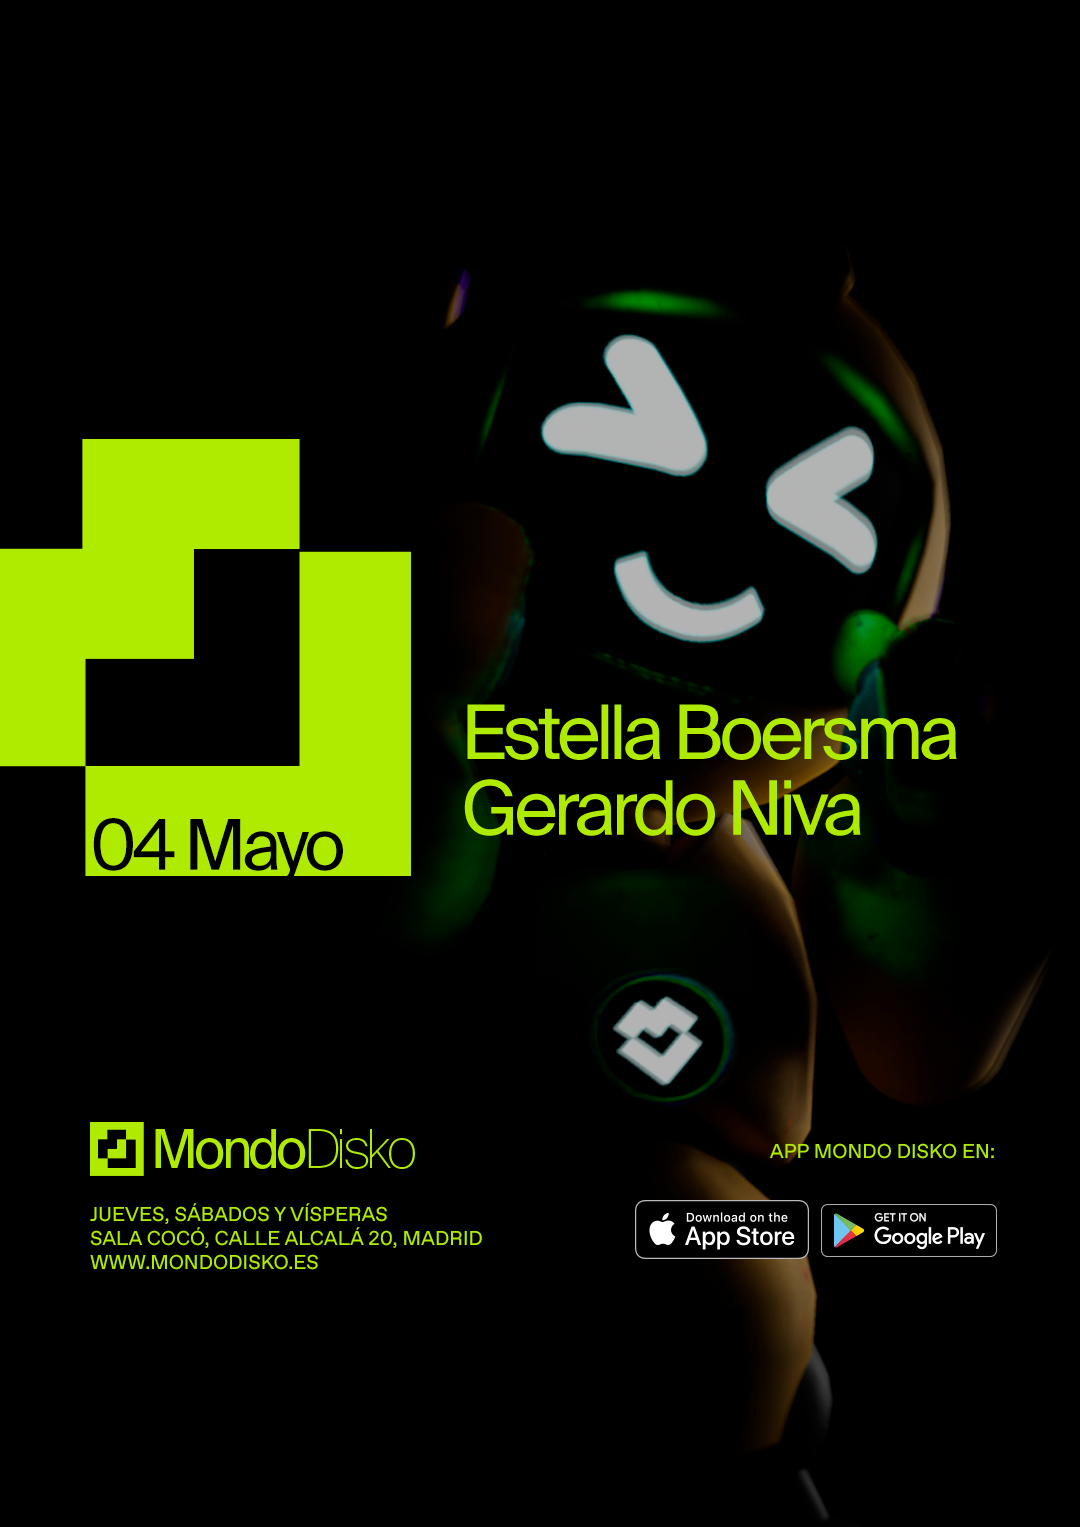 Estella Boersma / Gerardo Niva - フライヤー表